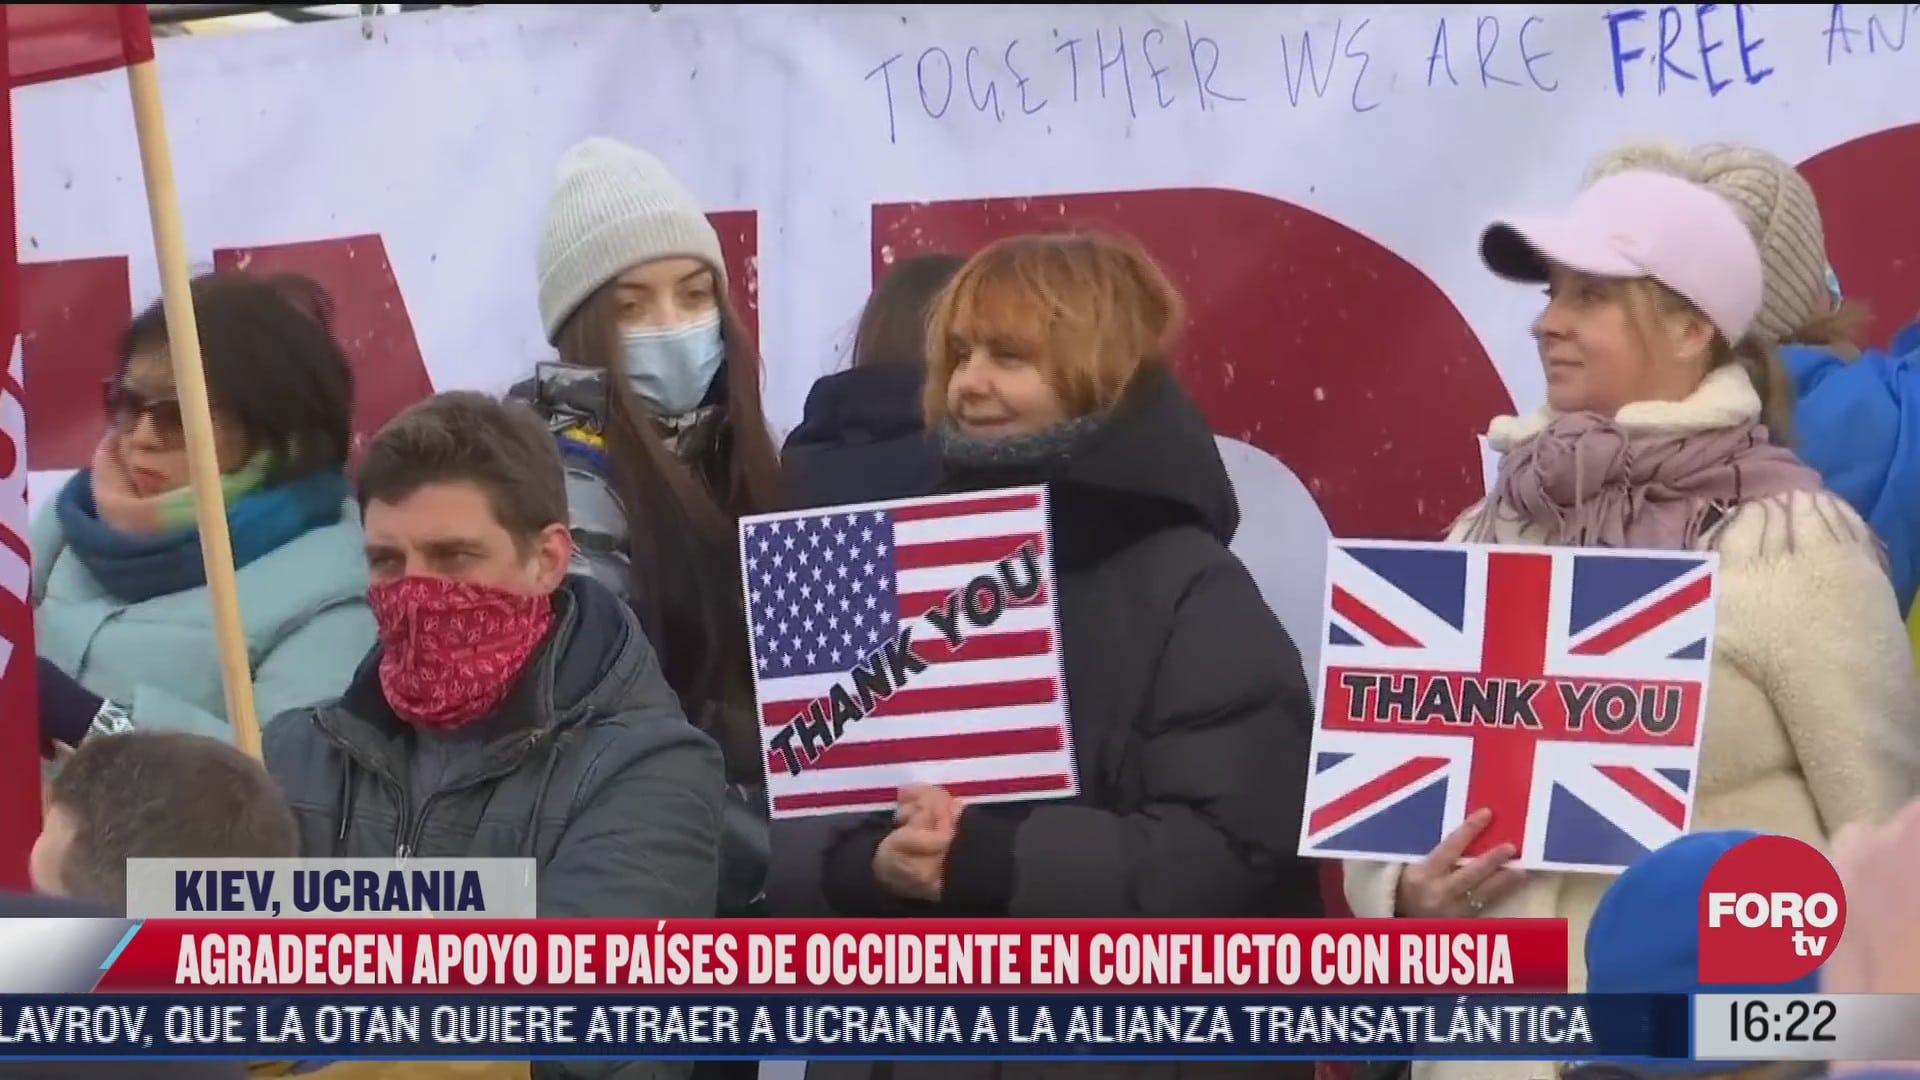 ucranianos salen a las calles para agradecer apoyo de occidente por conflicto con rusia